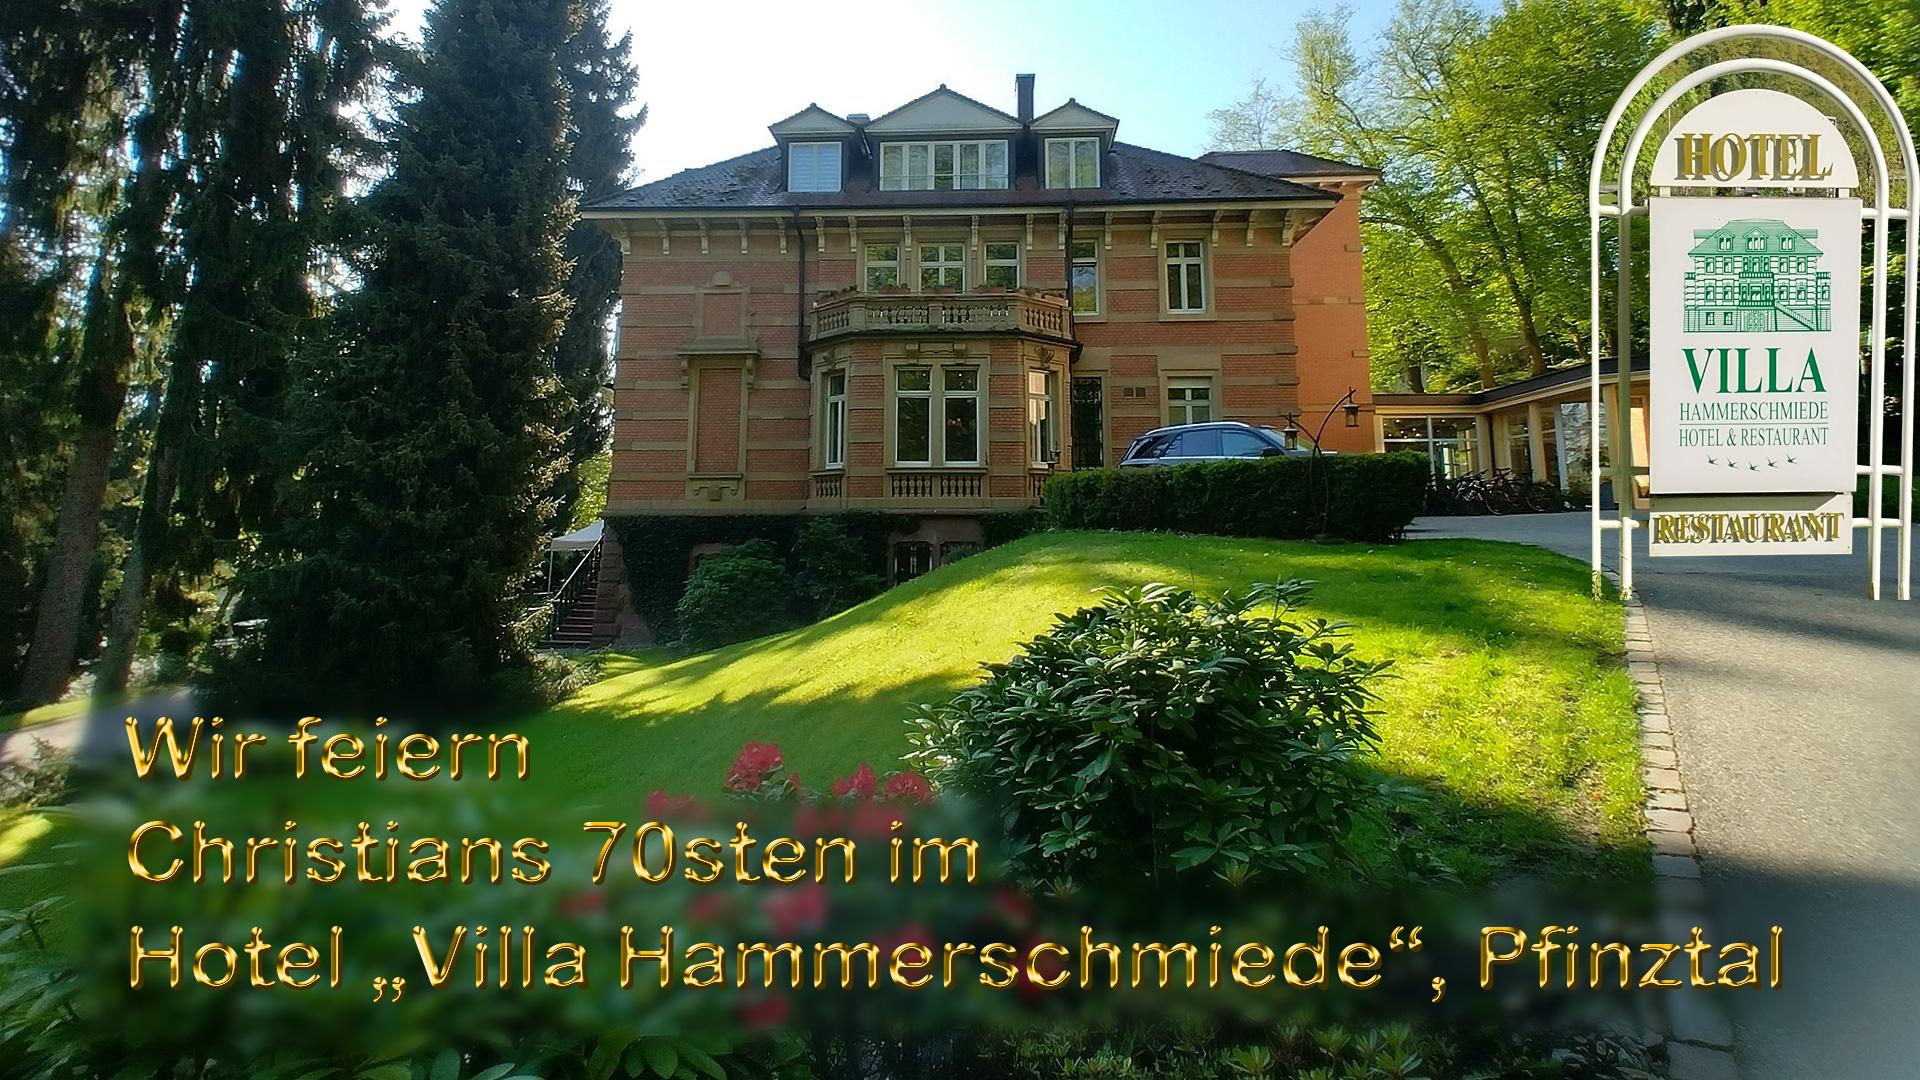 Wir feiern Christians 70sten im Hotel „Villa Hammerschmiede“ in Pfinztal bei Karlsruhe.